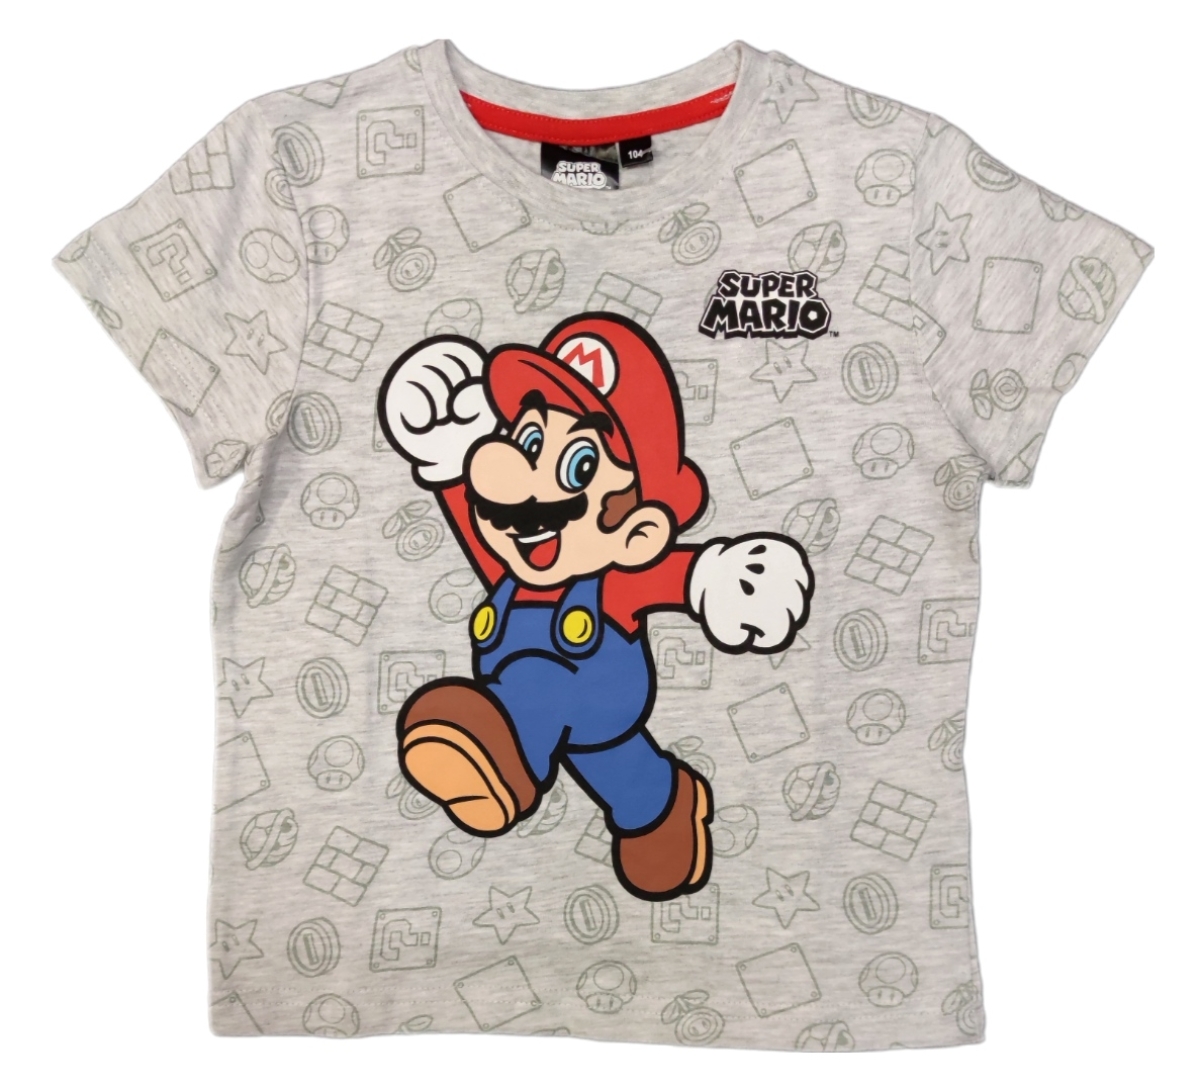 Schickes Super Mario T-Shirt mit Mario auf der Vorderseite. Das Shirt ist im Grundton grau. Zudem sind in einem dunkleren Grau noch Elemente aus dem gleichnamigen Videospiel wie Pilze, Sterne und Schildkrötenpanzer abgebildet